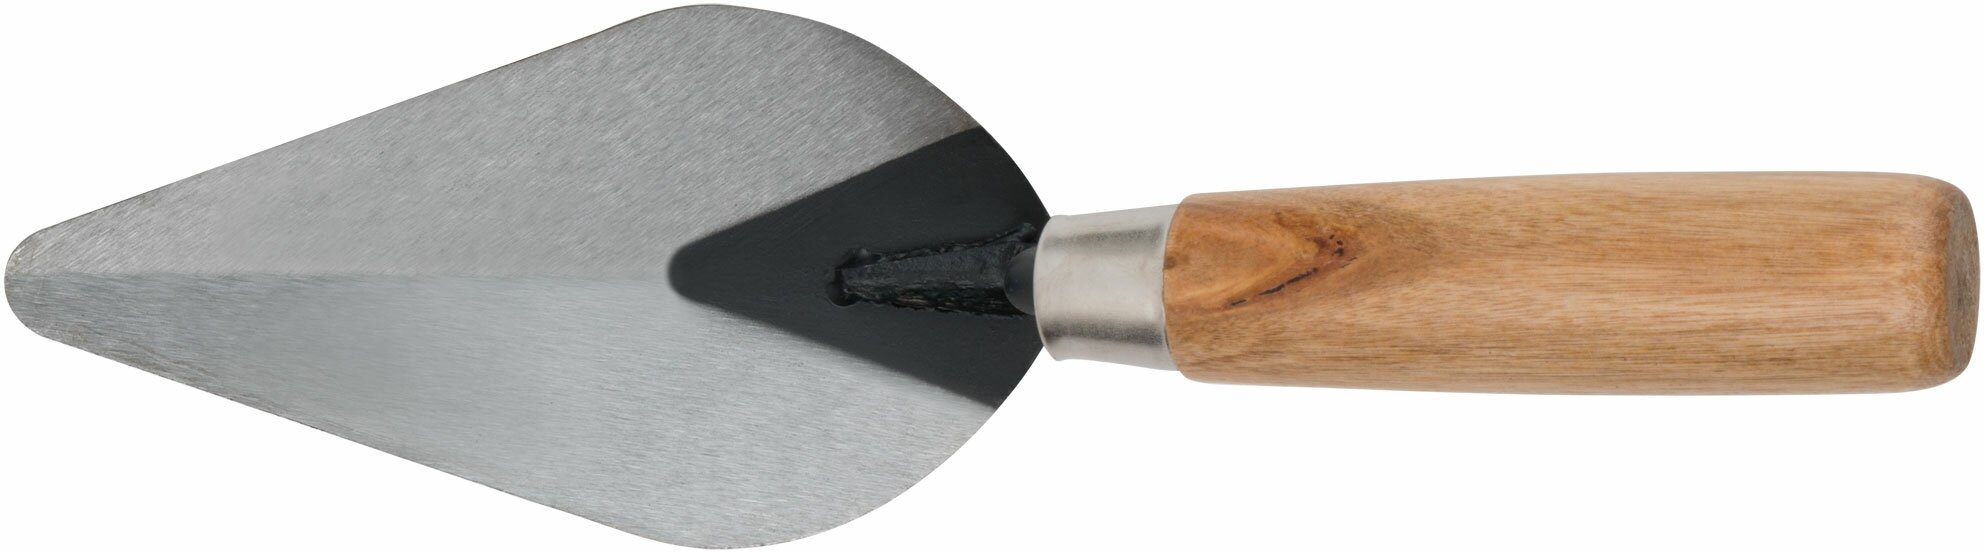 Кельма штукатура, инструментальная сталь, деревянная ручка 150 мм